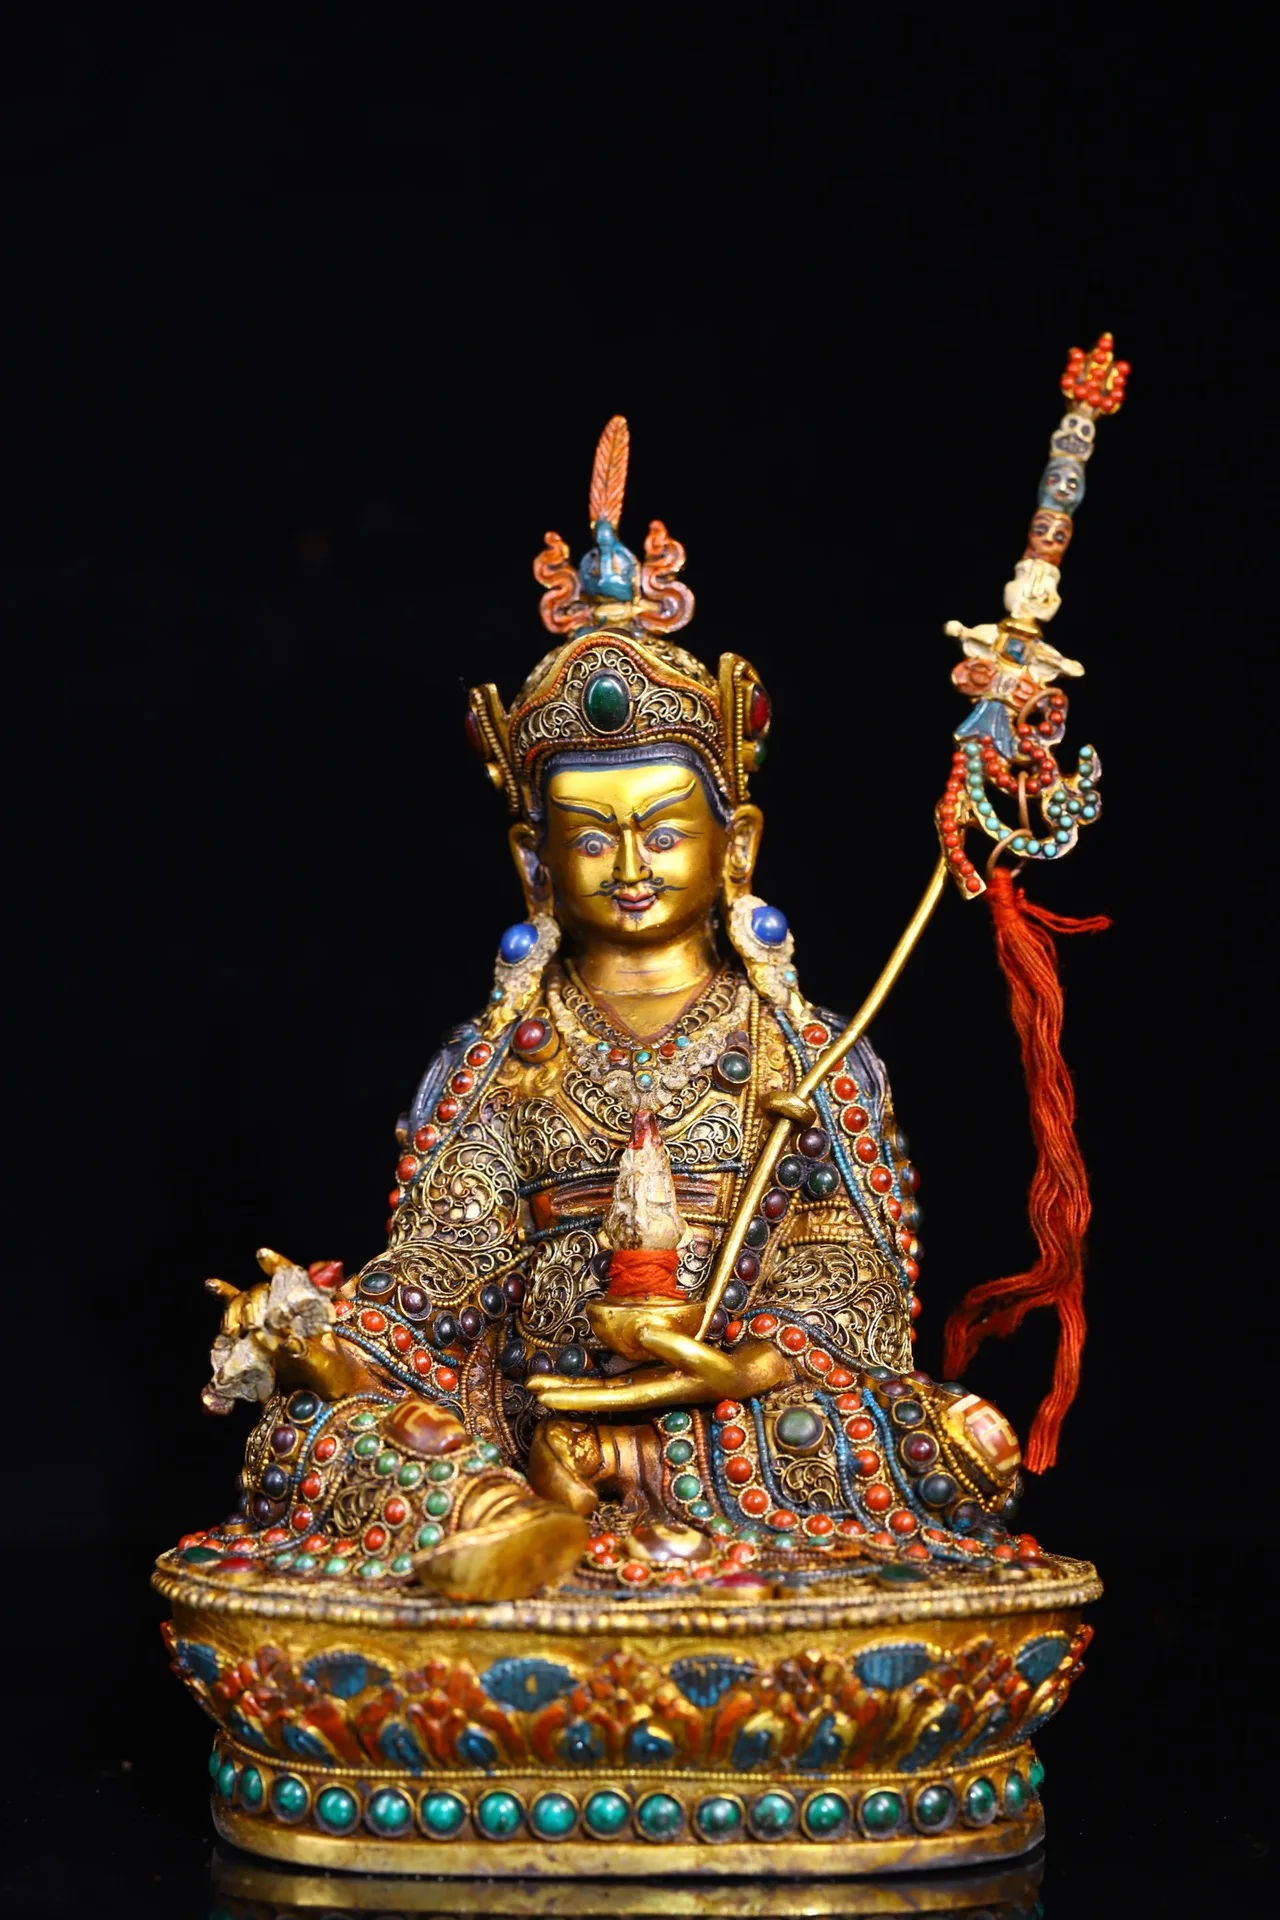 

Коллекция тибетских храмов 9 дюймов, старые тибетские серебряные следы, Золотая мозаика, драгоценный камень, gZi, бусины Padmasambhava Guru Ринпоче, коридор